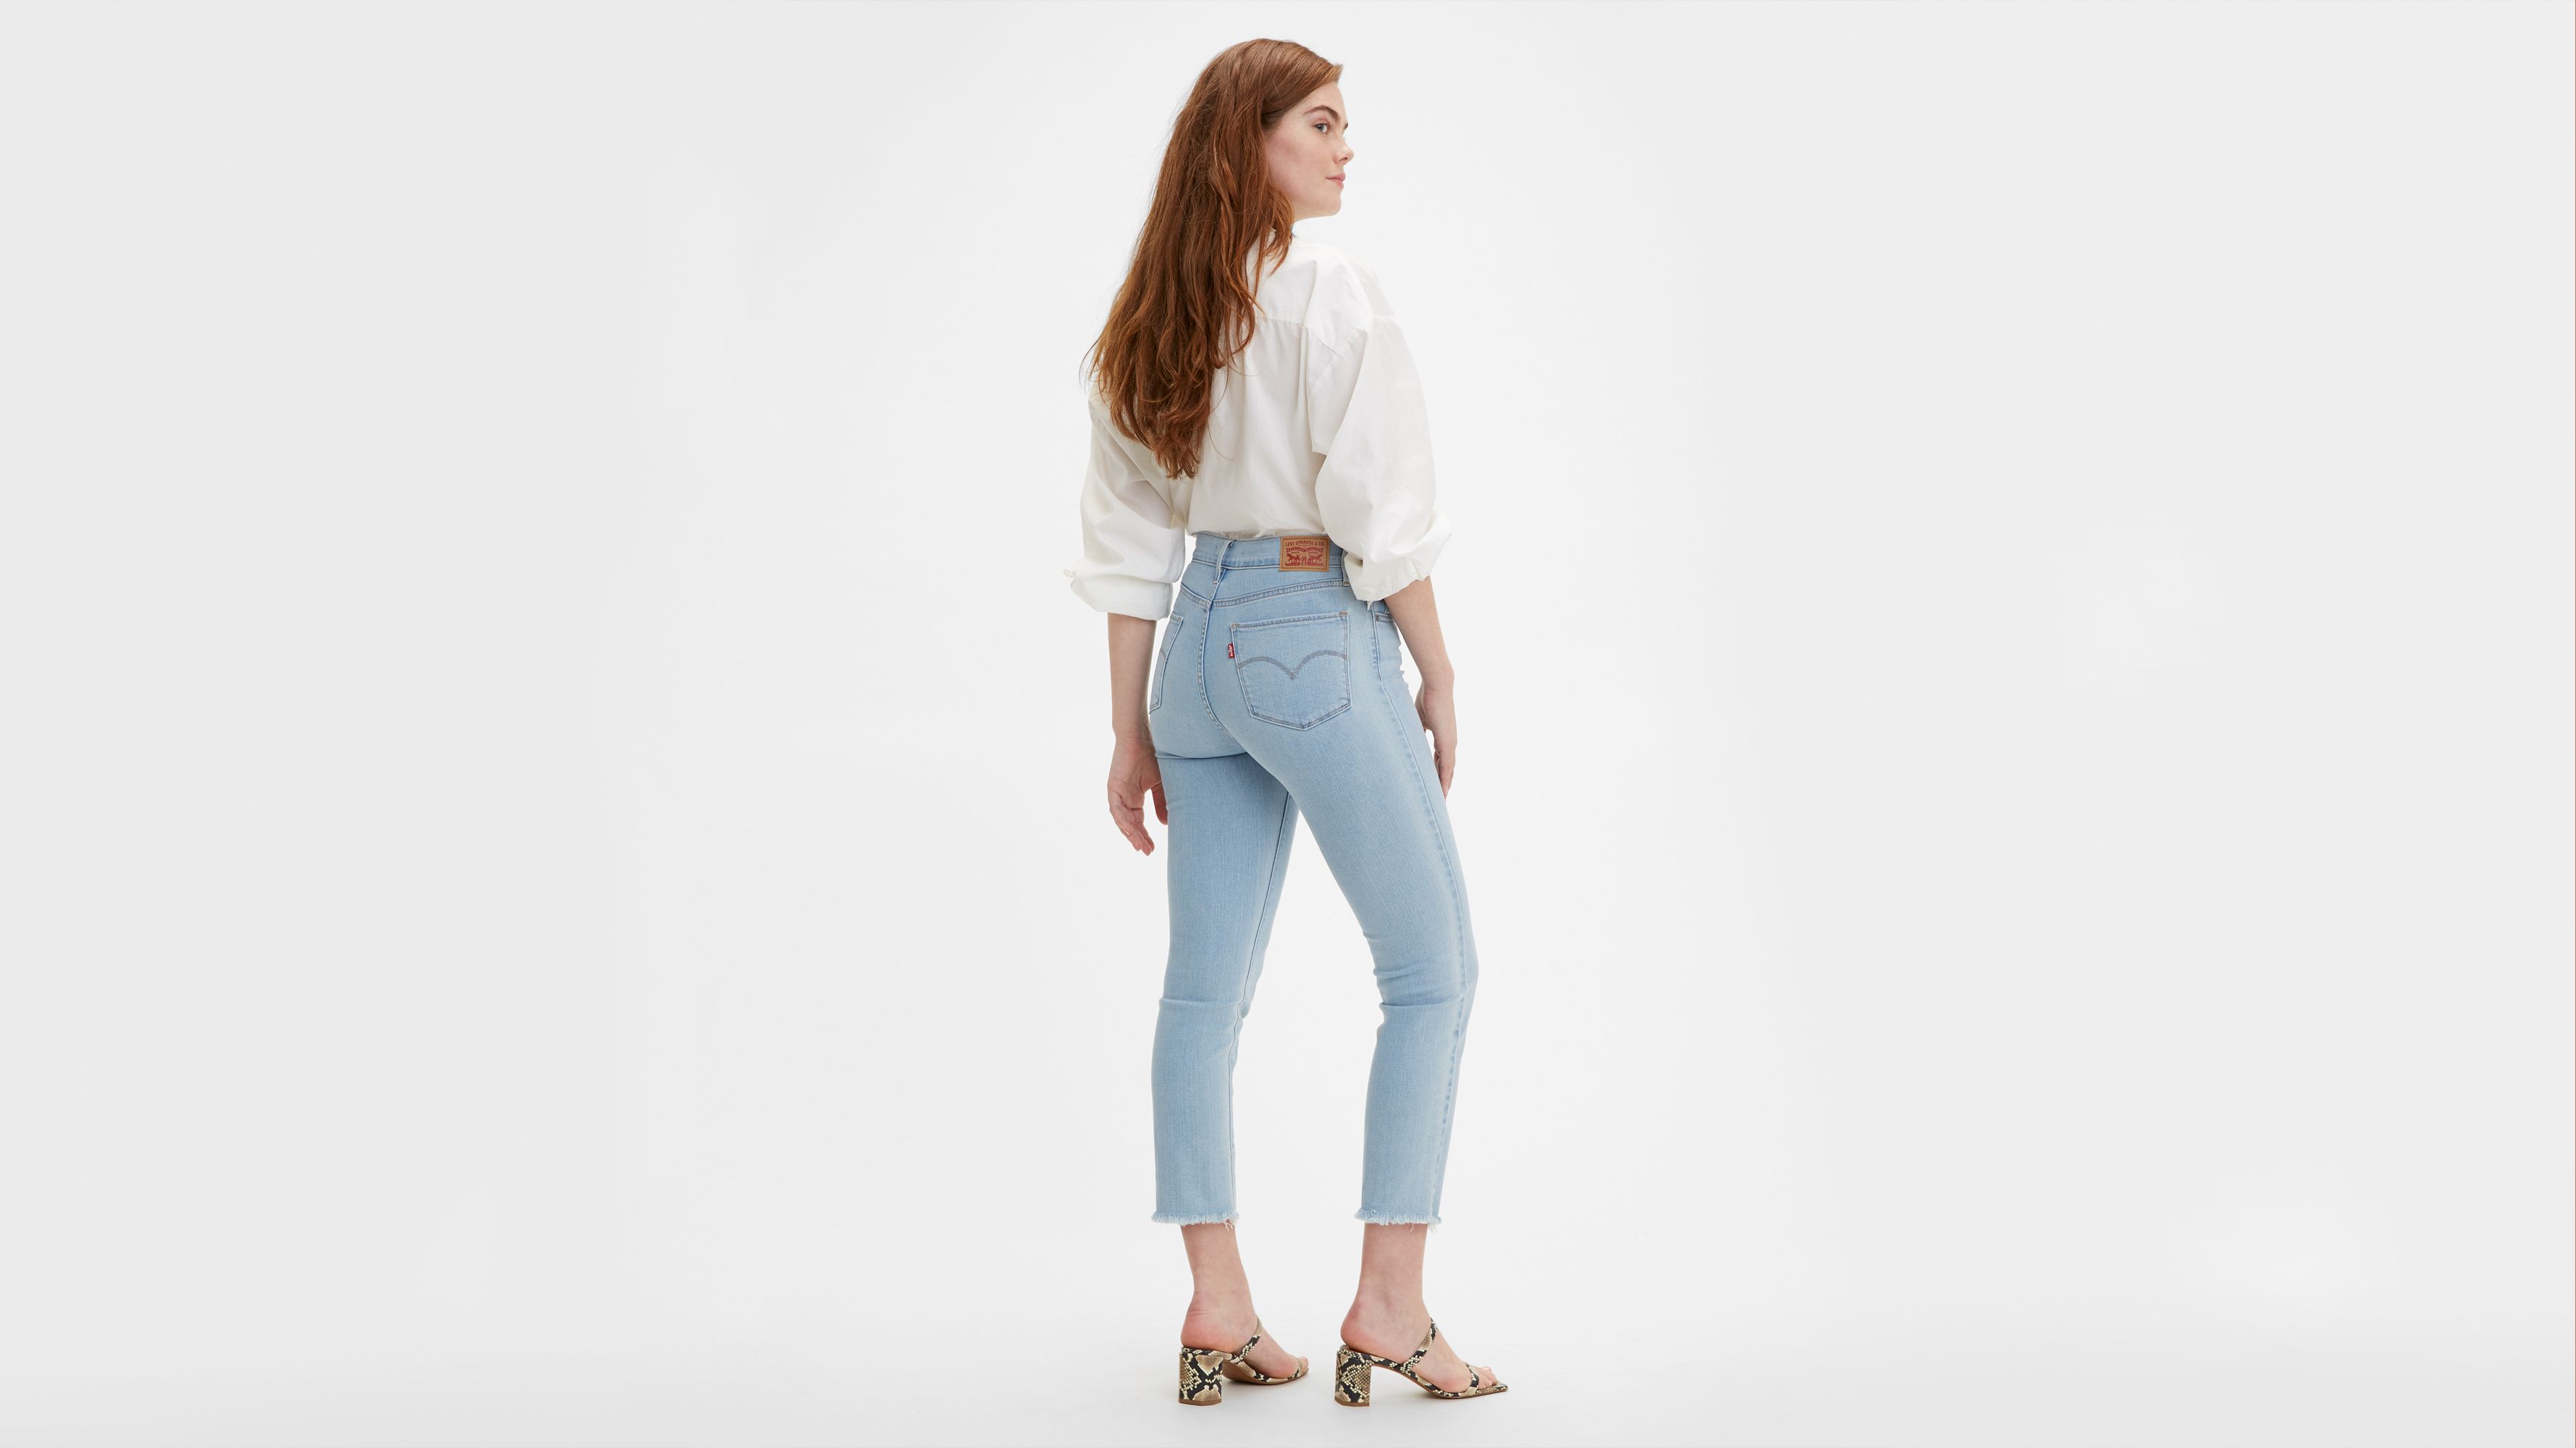 levis jeans 724 women's